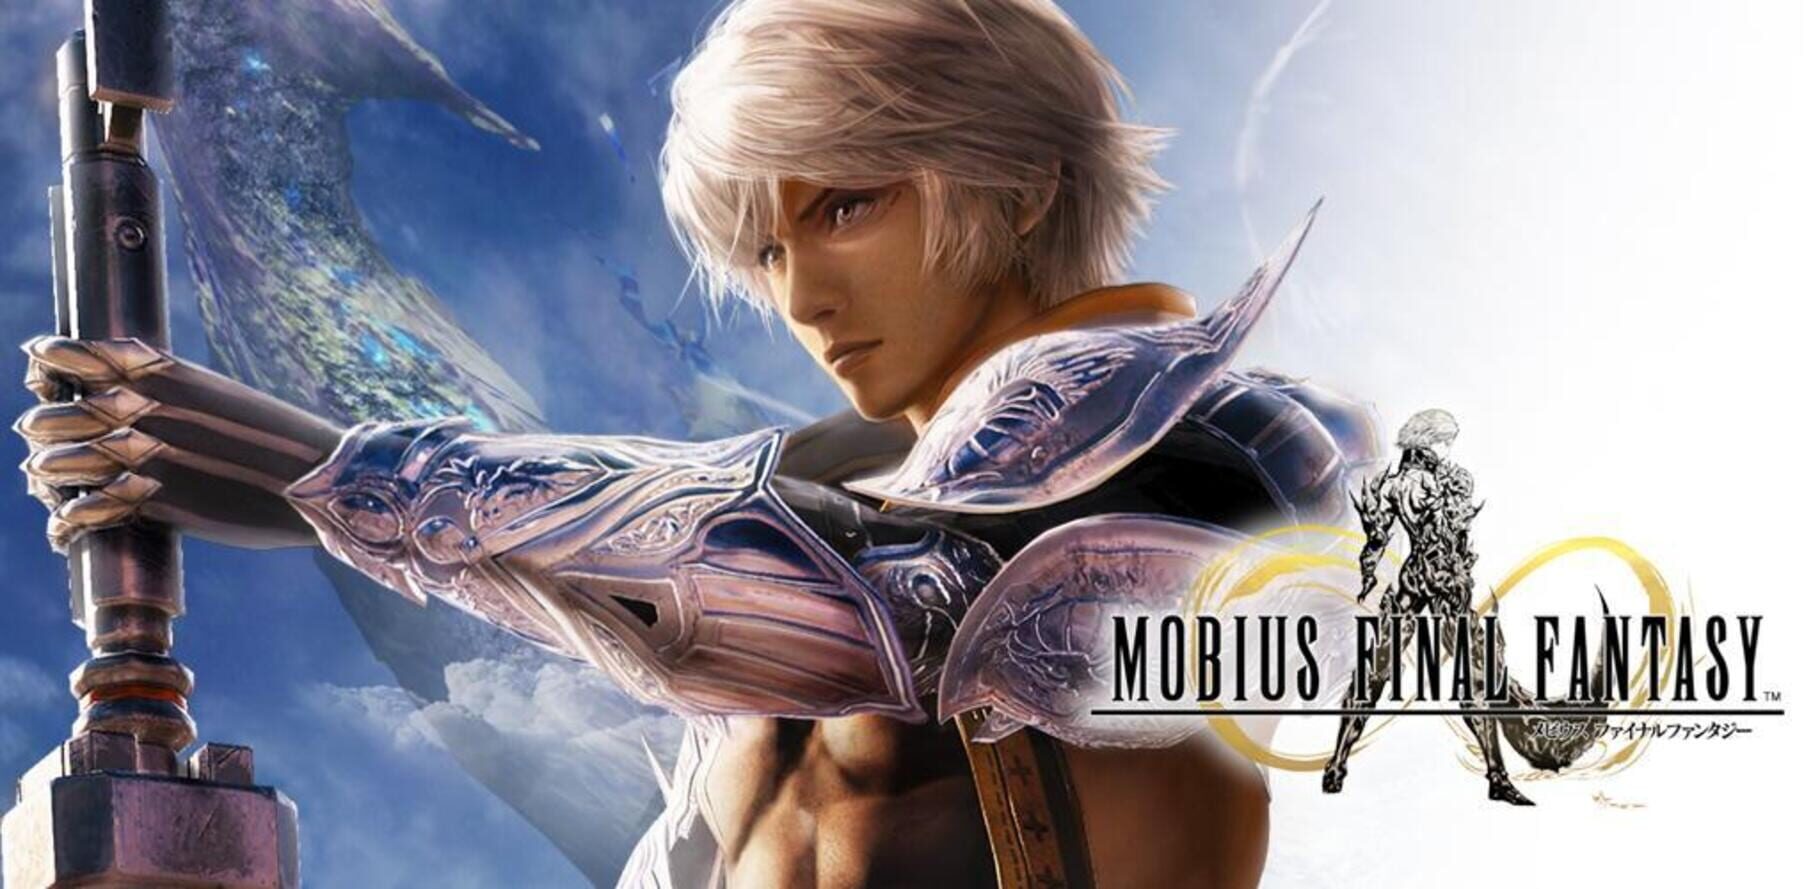 Arte - Mobius Final Fantasy